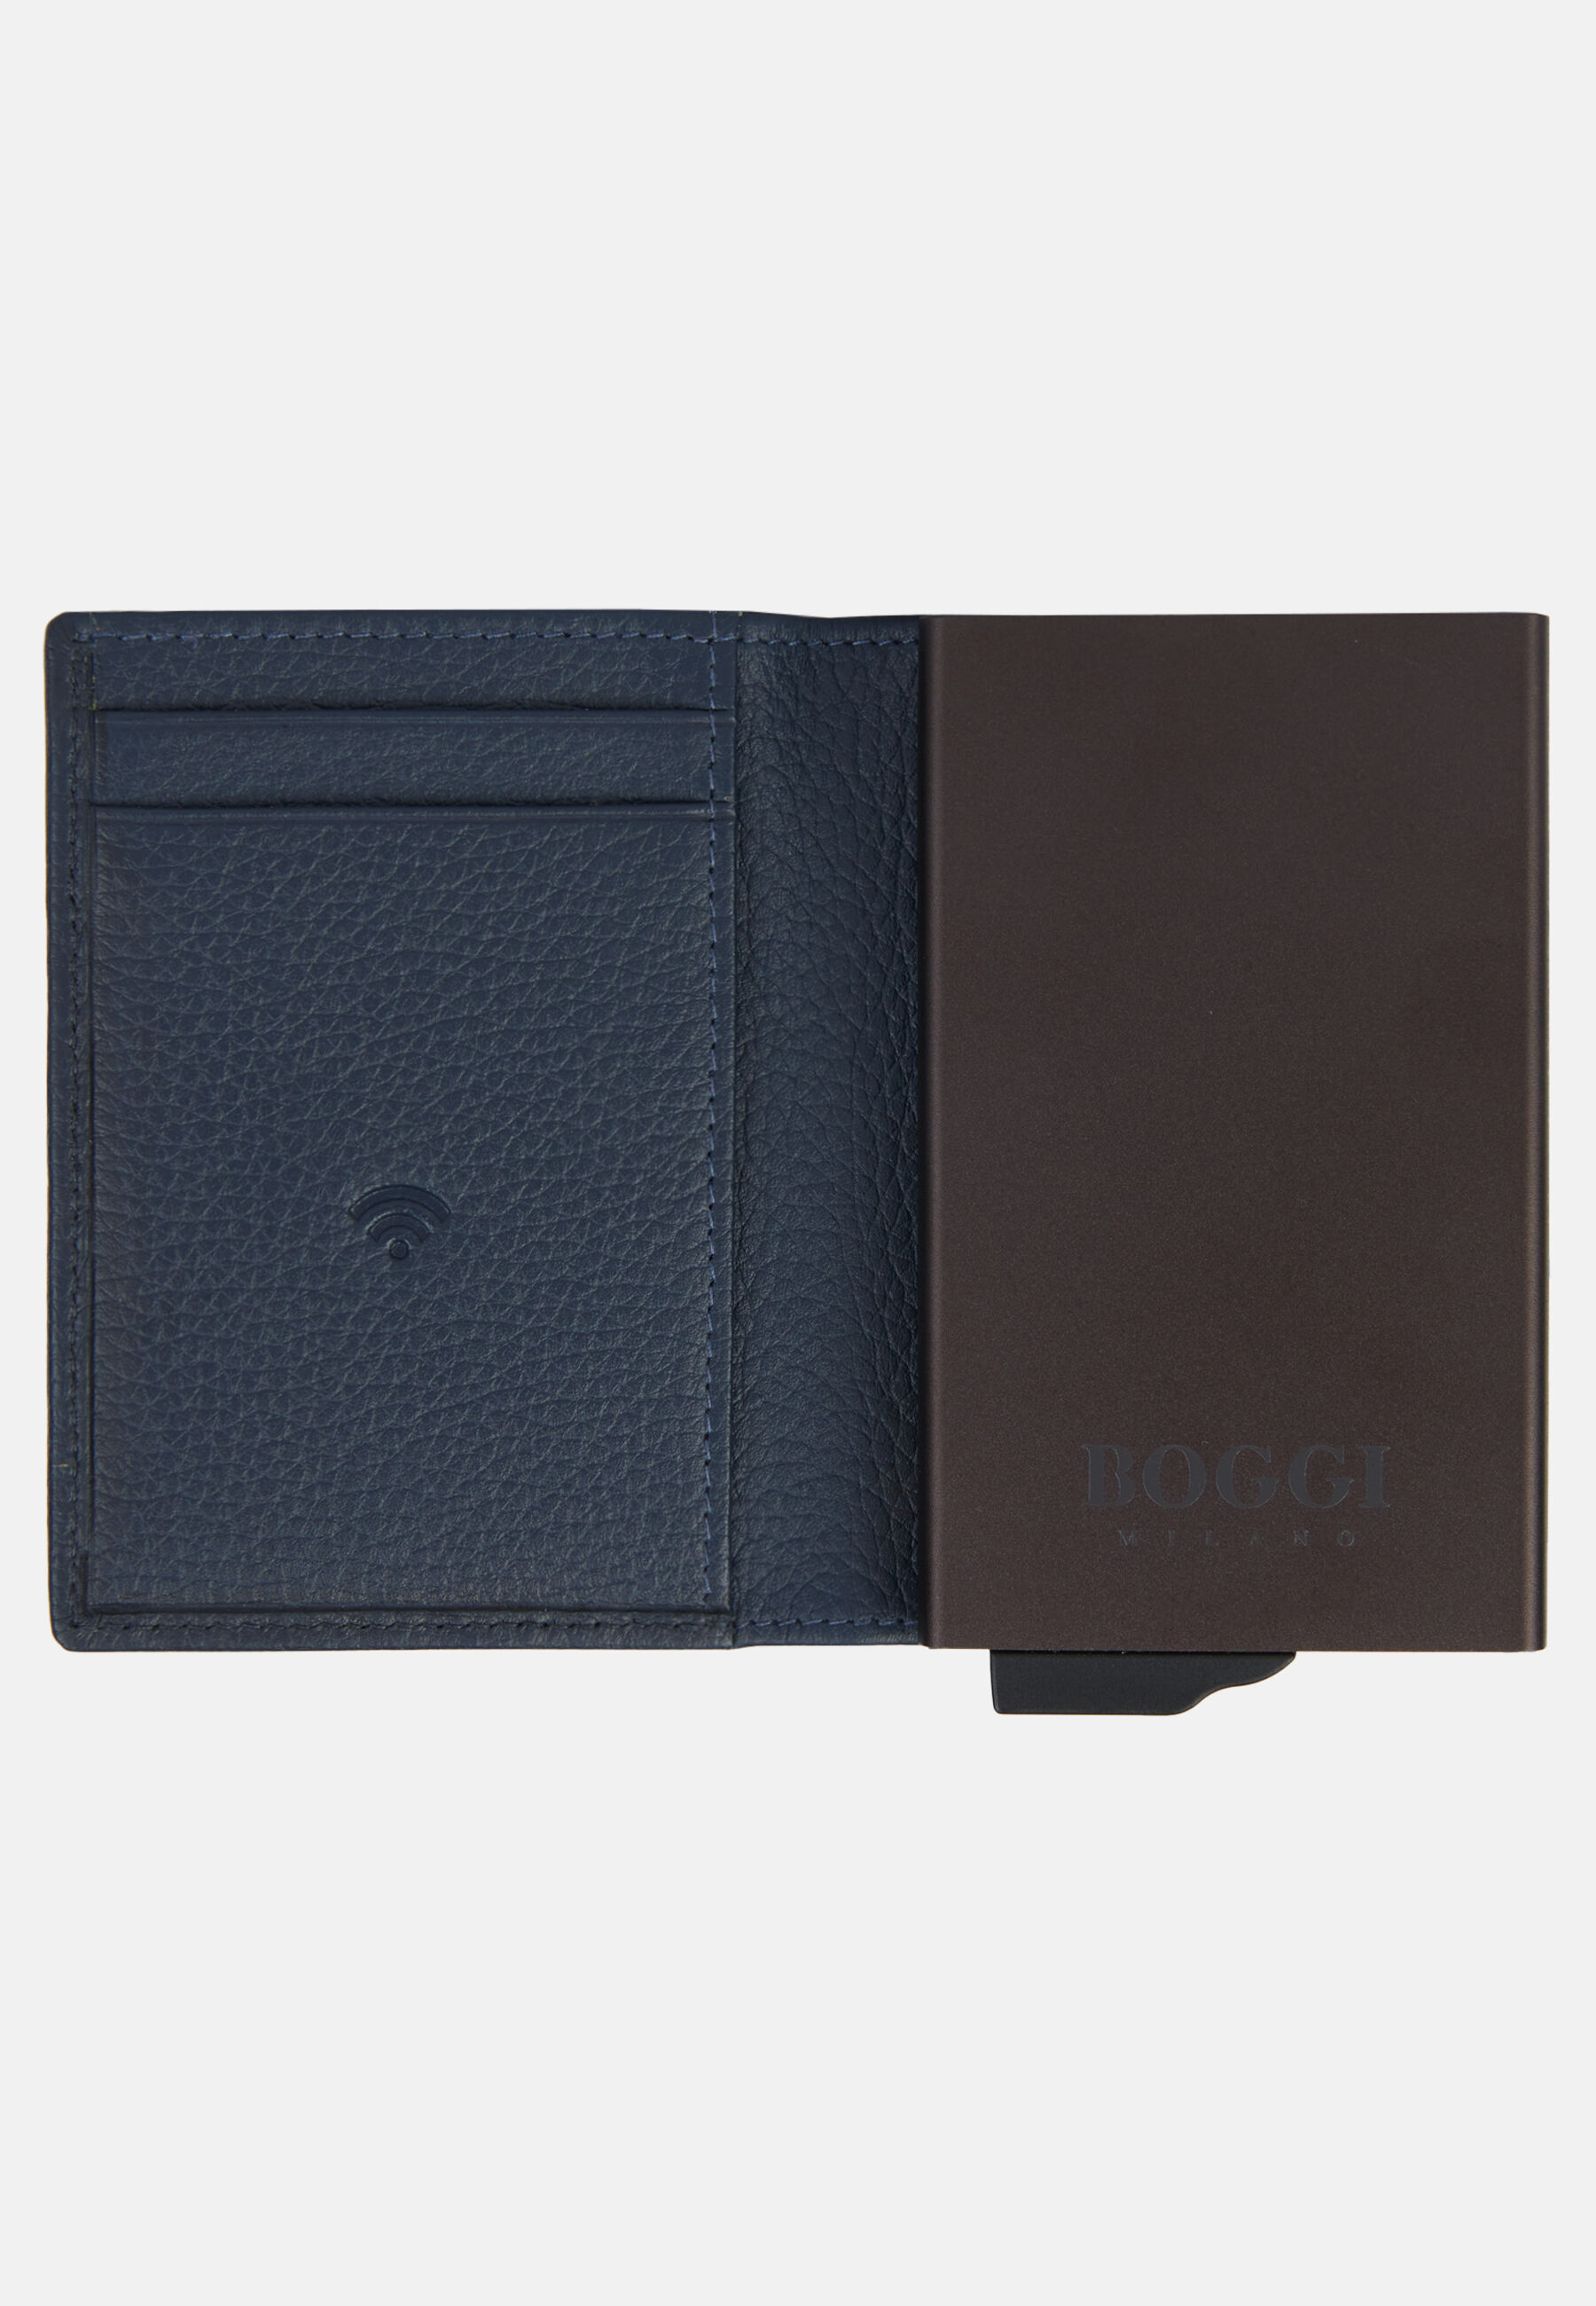 Leather Credit Card Holder, Navy blue, hi-res